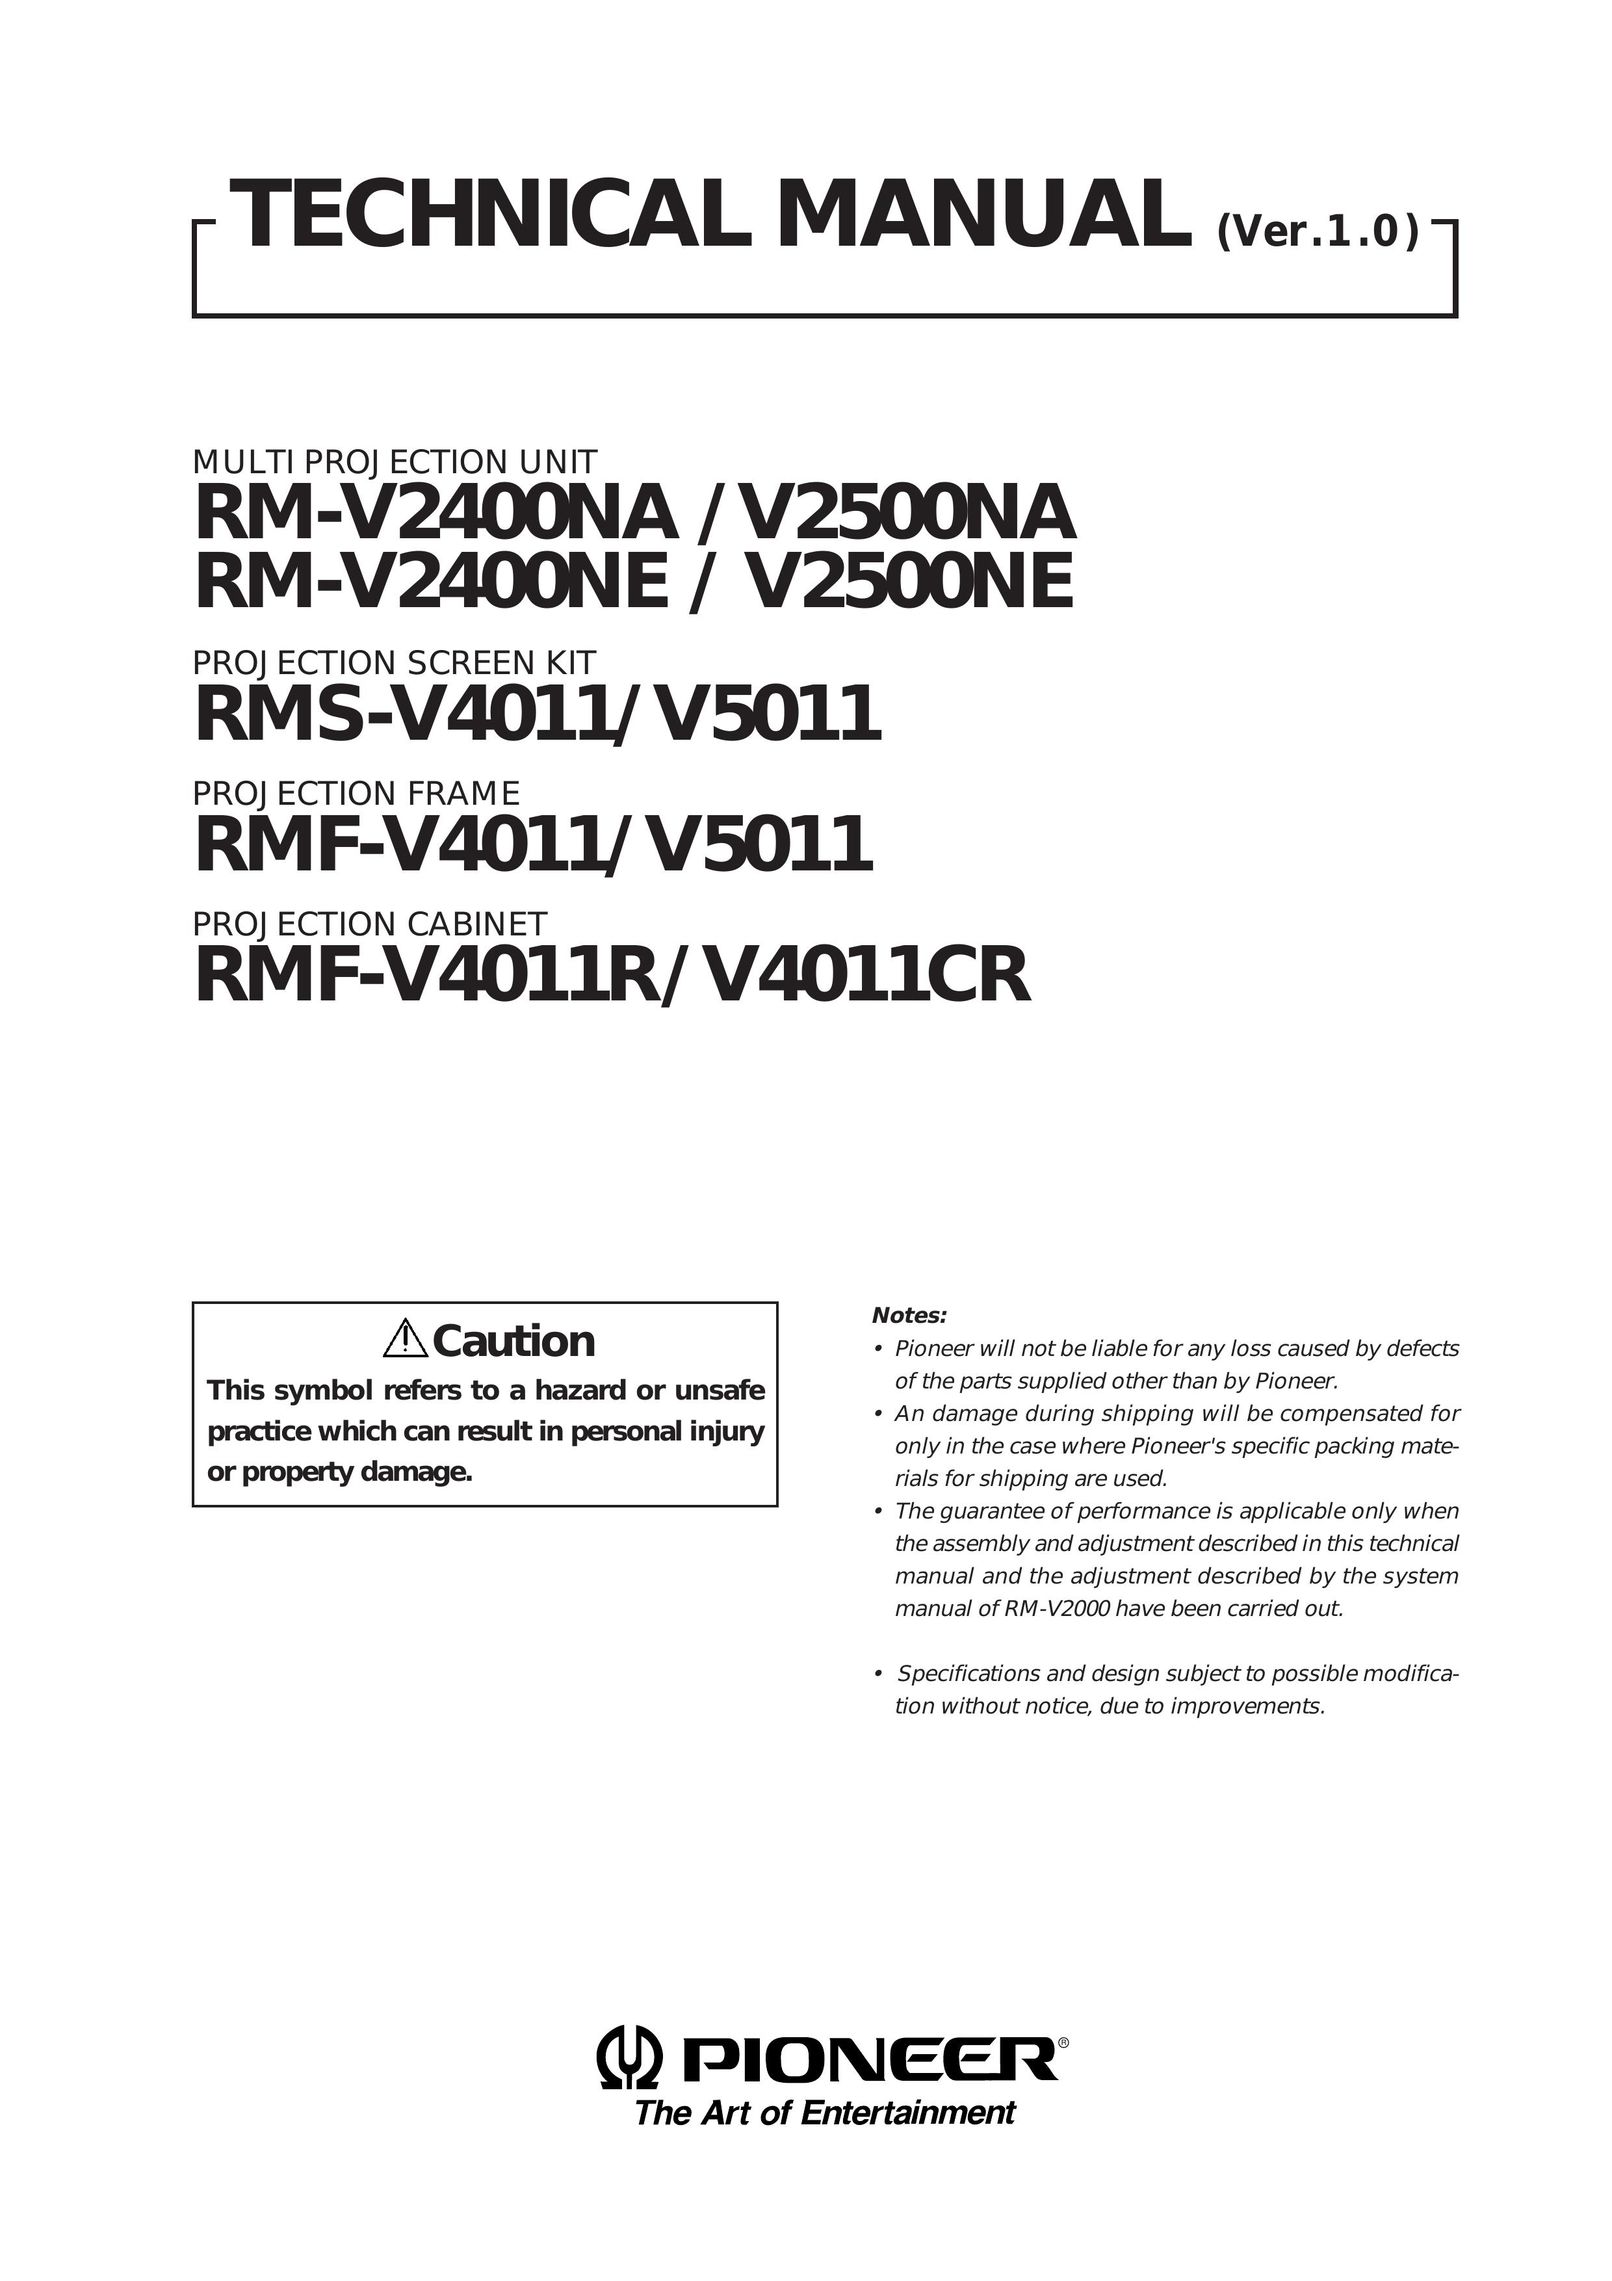 Pioneer V5011 Projector User Manual